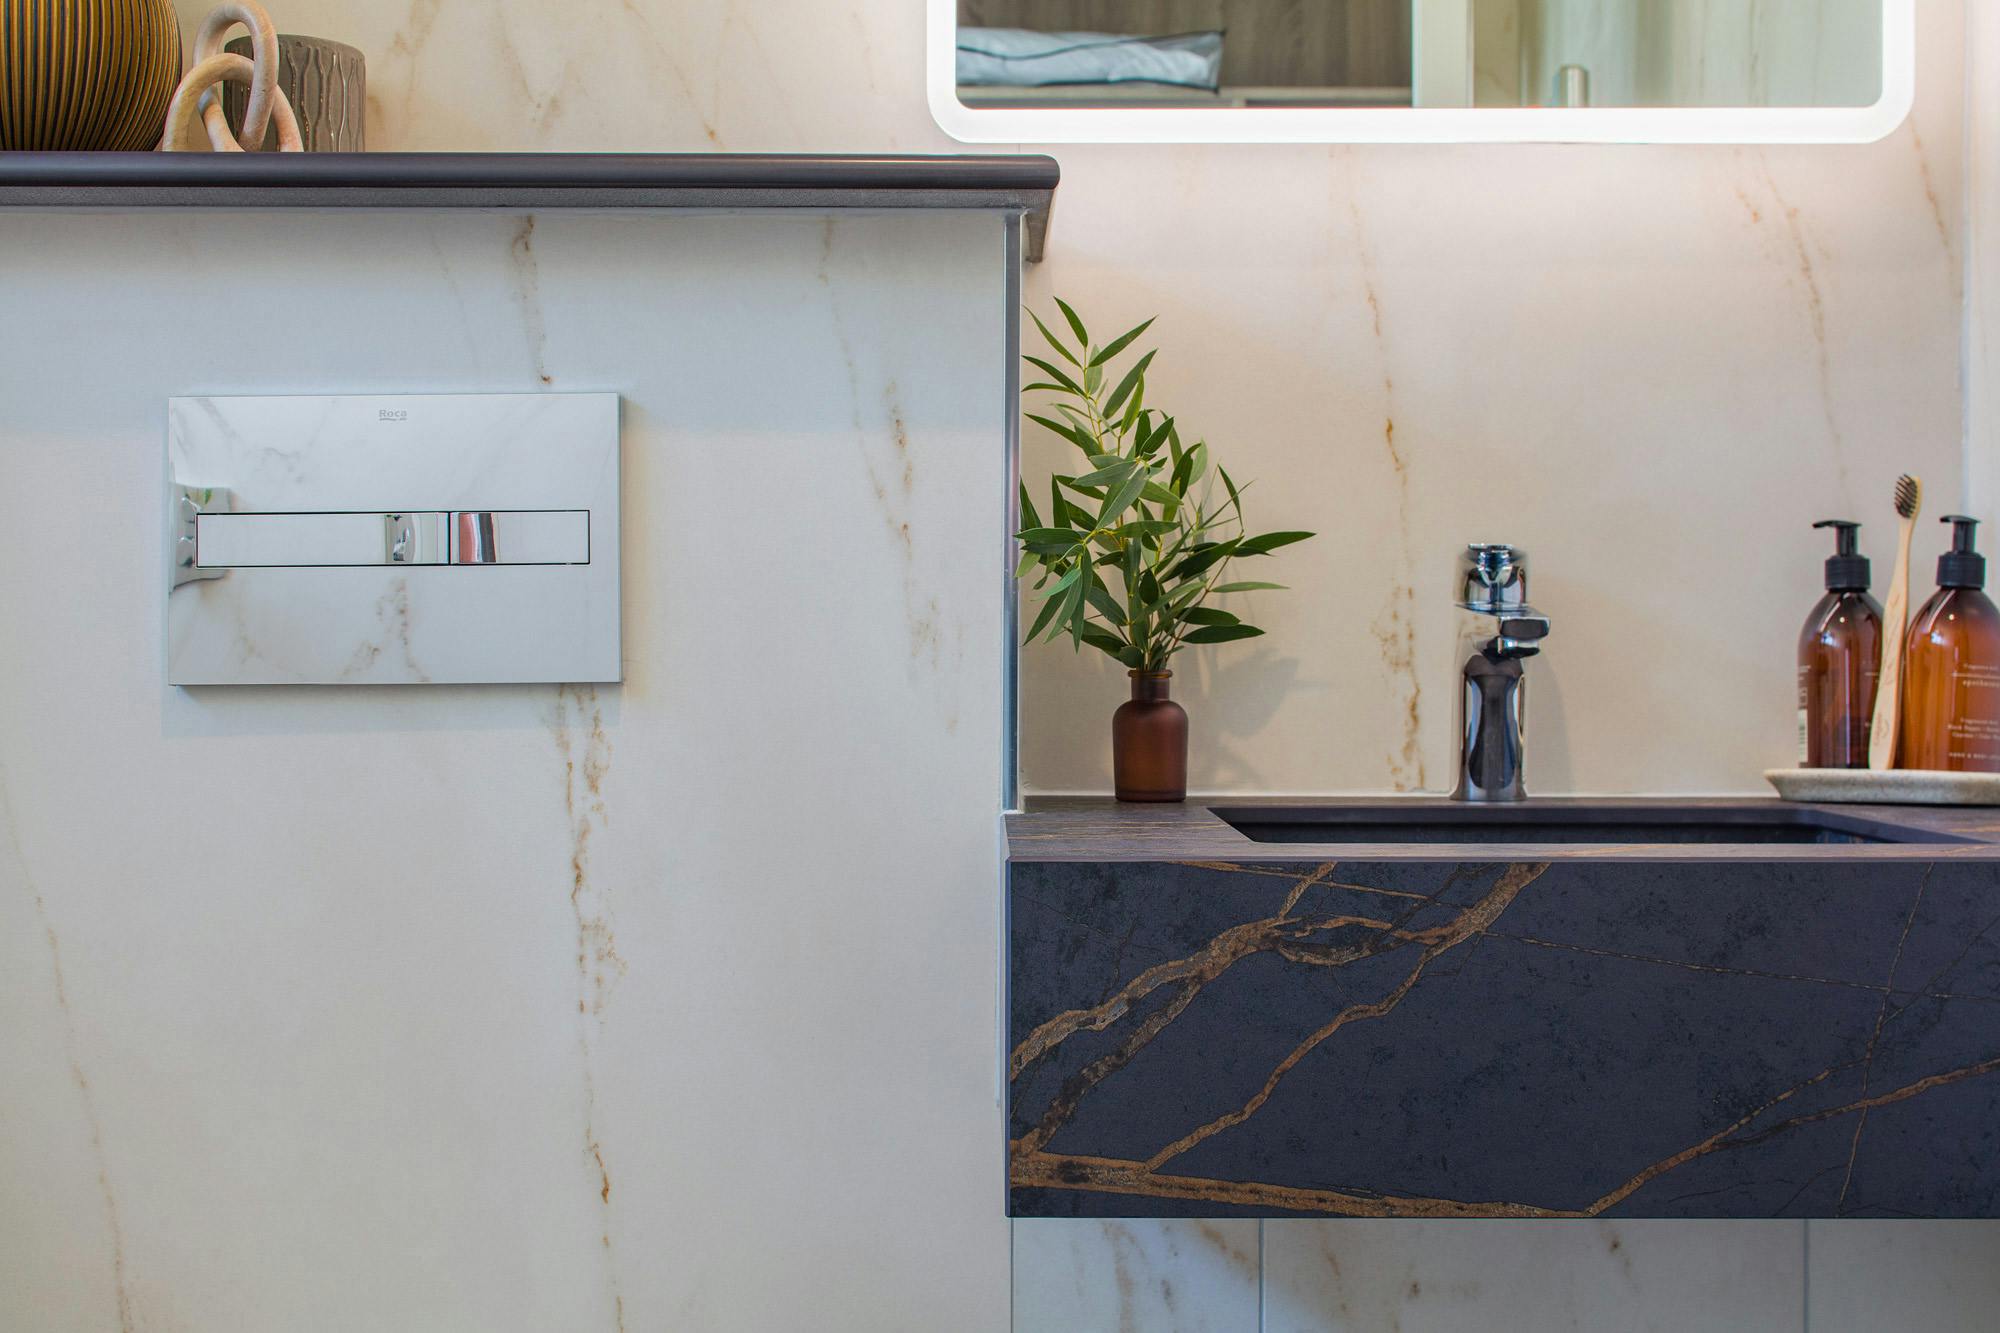 Numero immagine 35 della sezione corrente di Natural light partners with DKTN Marmorio to create an enveloping, sophisticated bathroom di Cosentino Italia